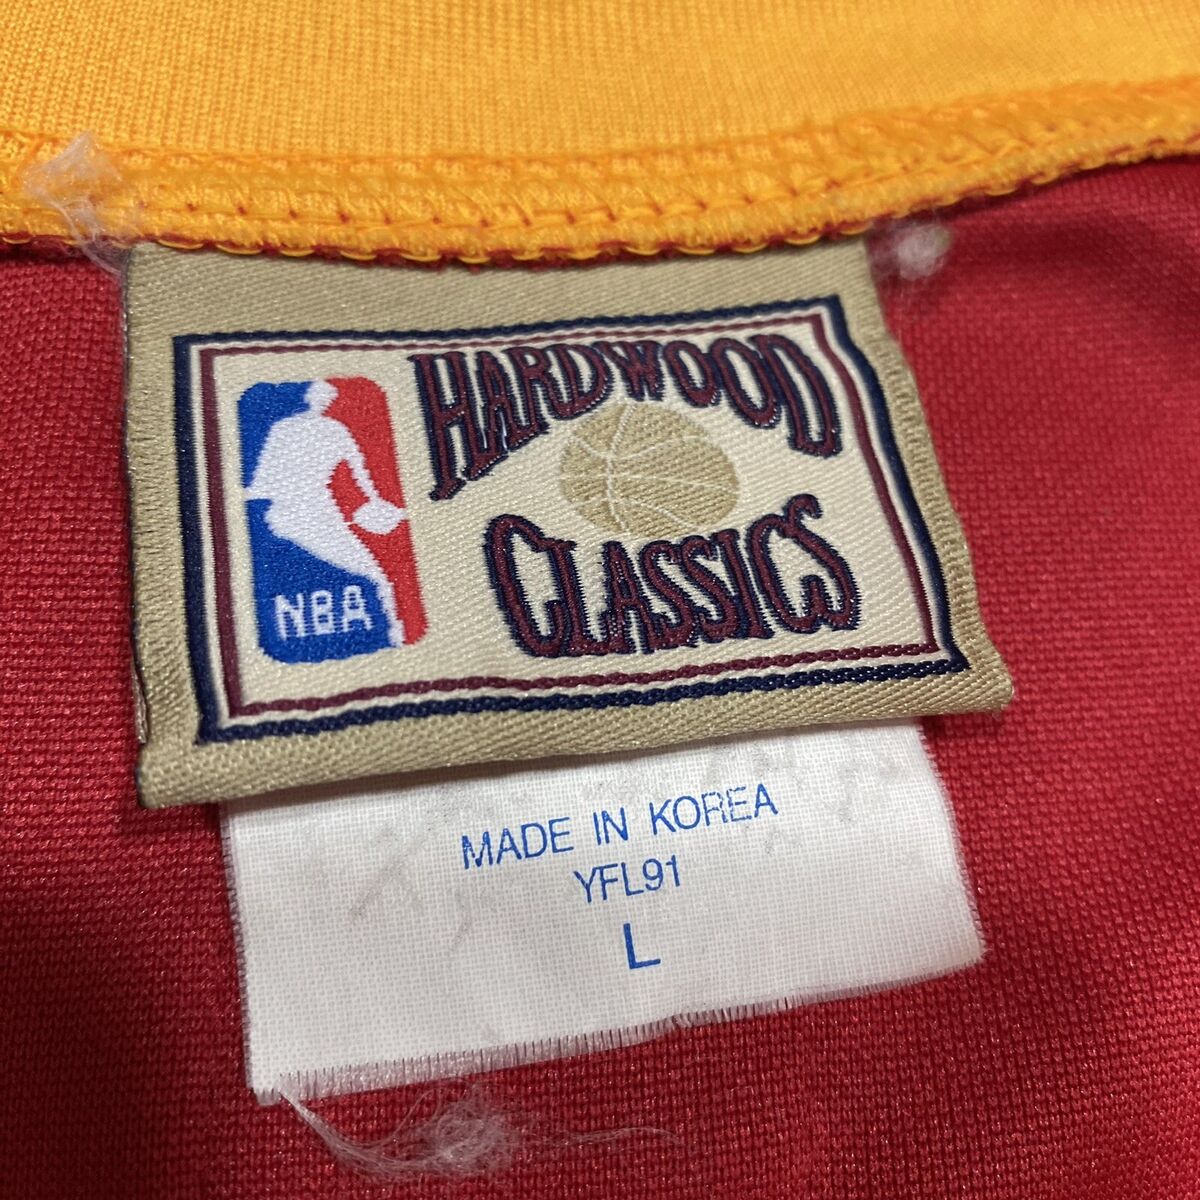 NBA Hardwood Classic Jerseys & Apparel